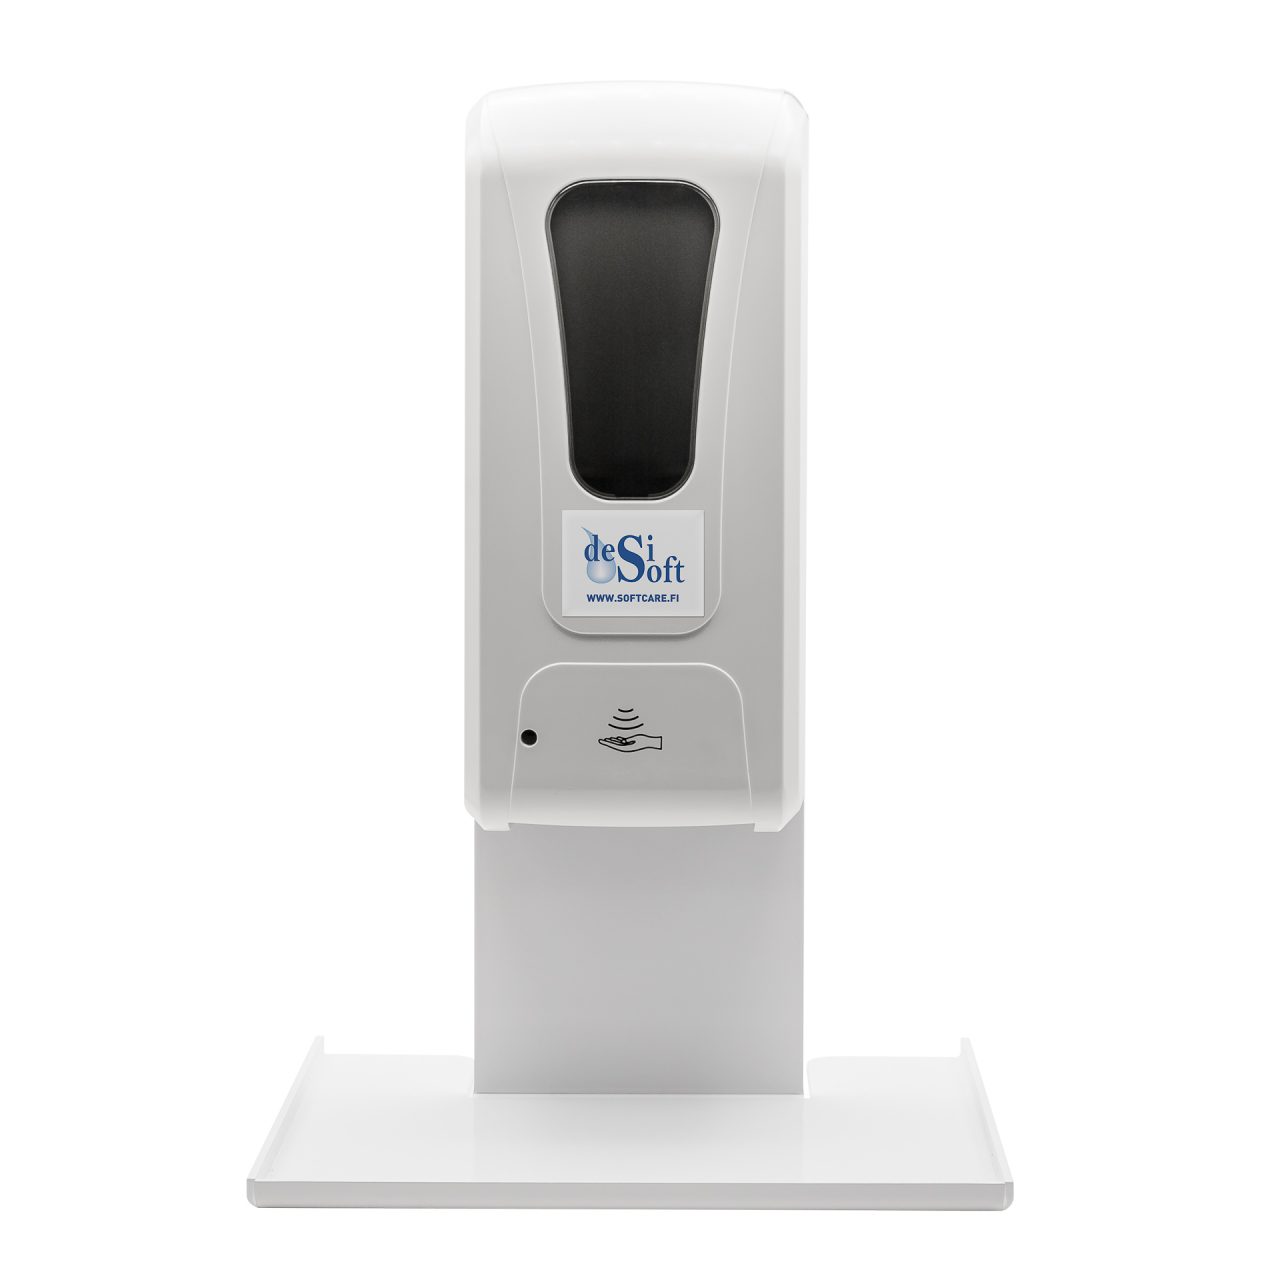 Hand sanitizer dispenser